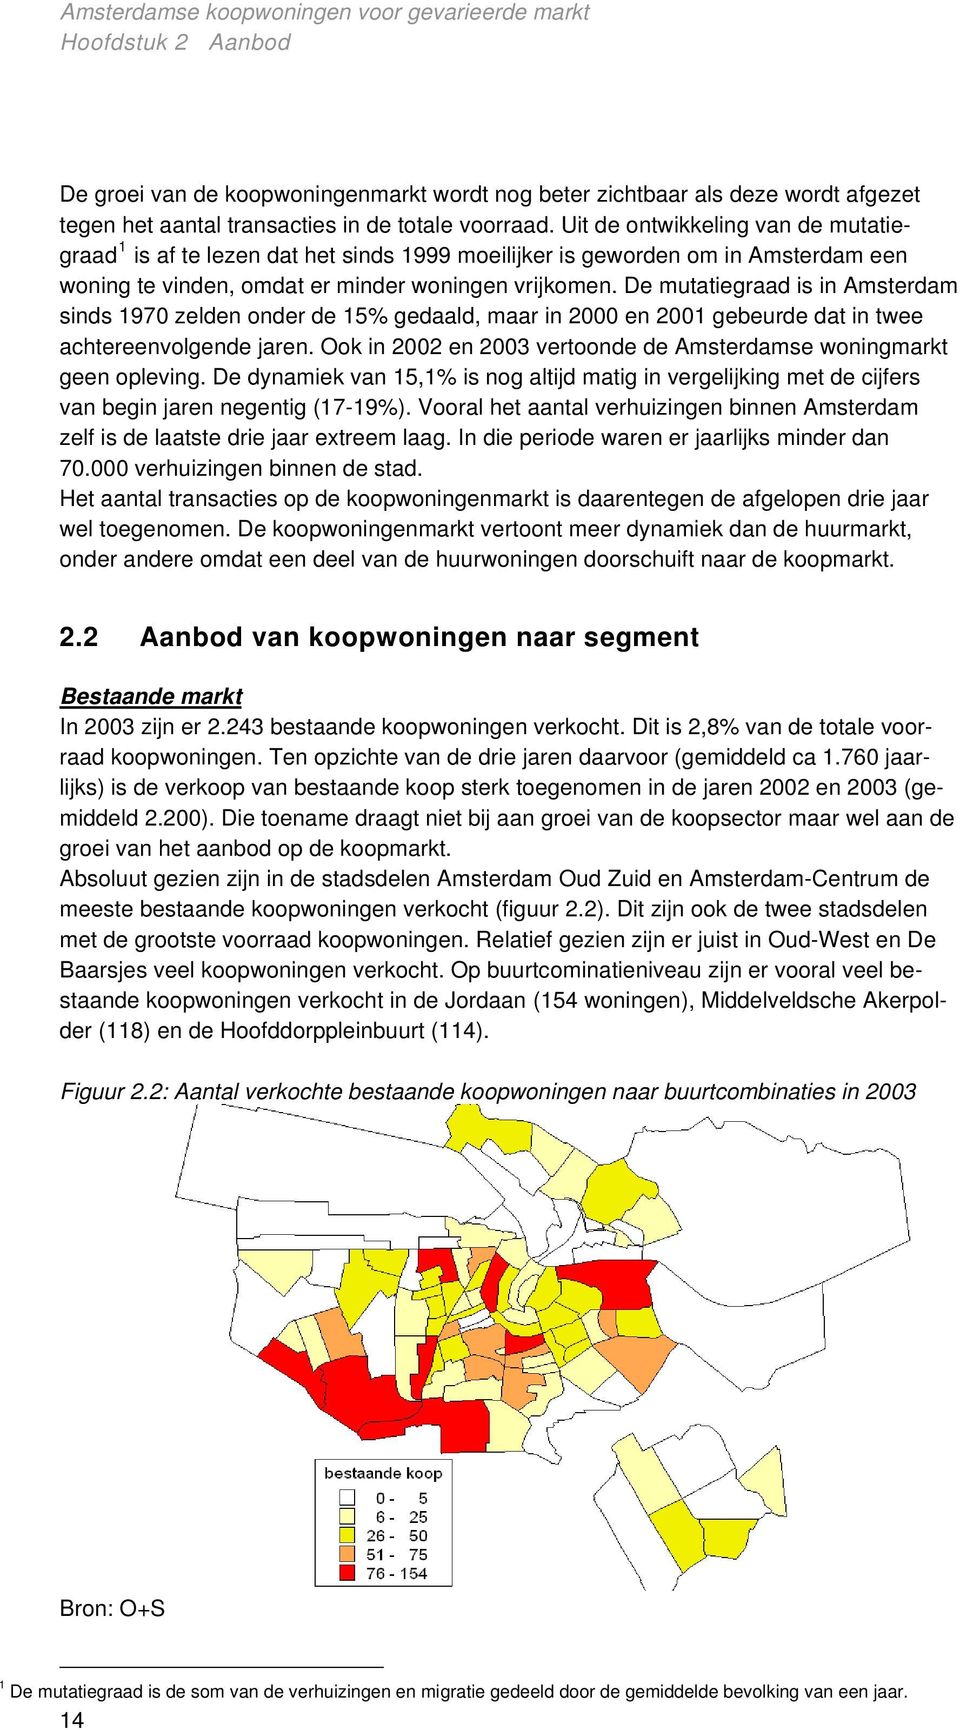 De mutatiegraad is in Amsterdam sinds 1970 zelden onder de 15% gedaald, maar in 2000 en 2001 gebeurde dat in twee achtereenvolgende jaren.